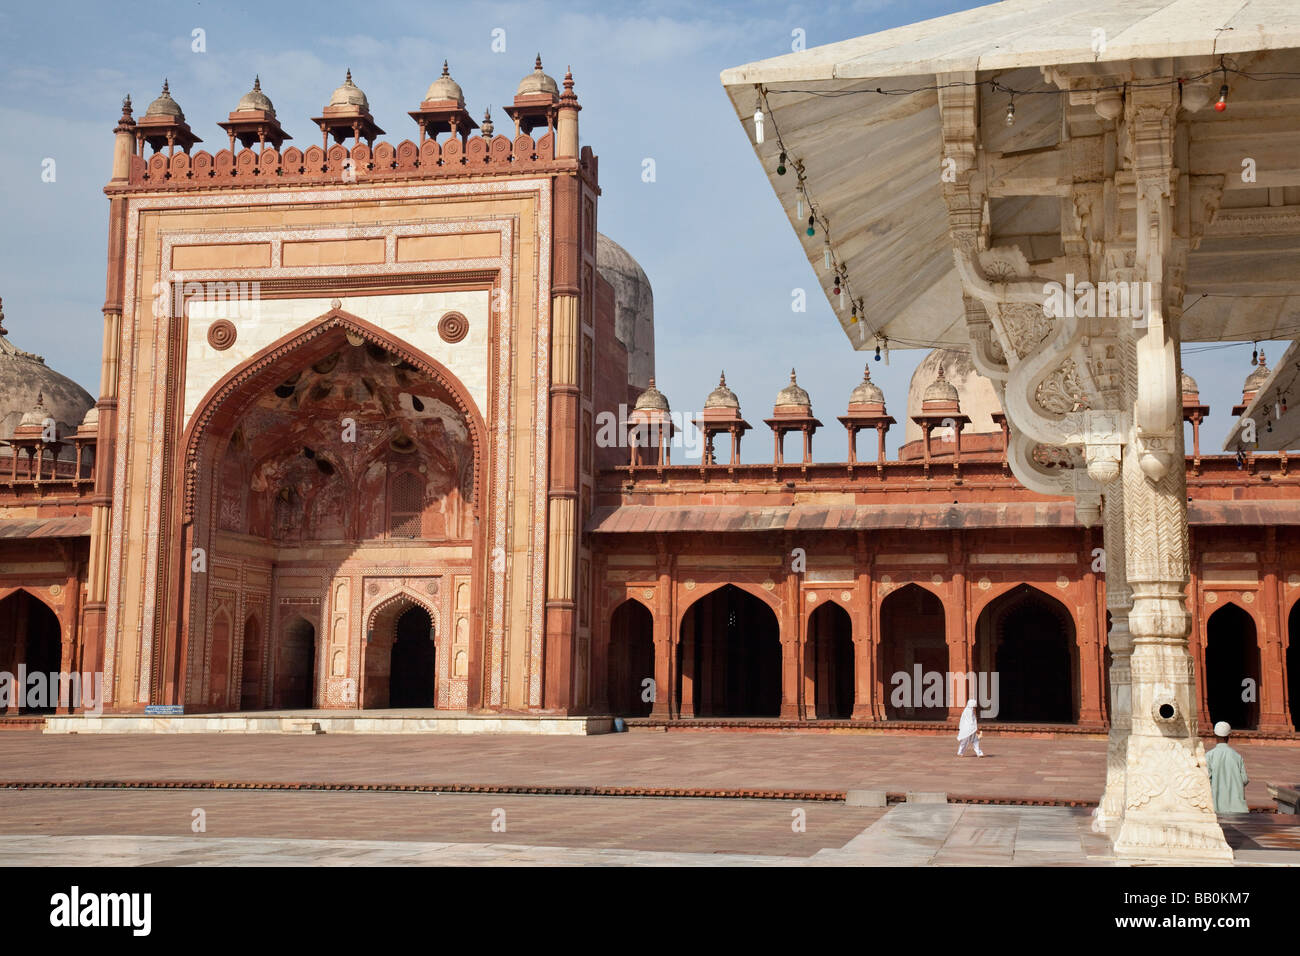 Le cheikh Salim Chishti tombe à l'intérieur de la Jama Masjid de Fatehpur Sikri Inde Banque D'Images